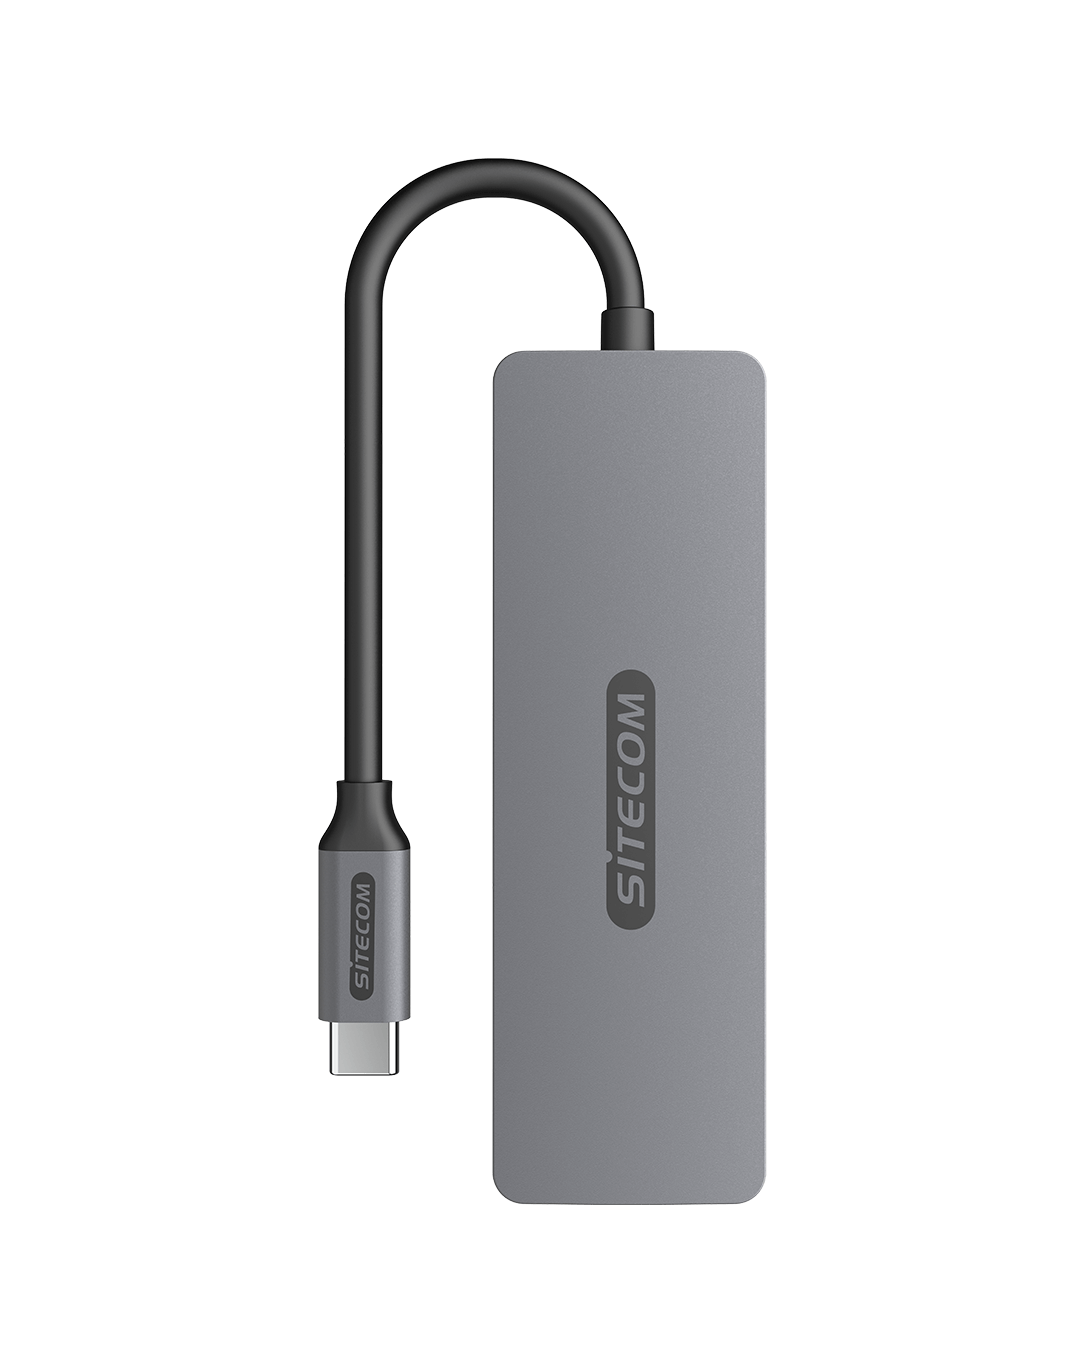 Sitecom 5 in 1 USB-C Multiport Adapter - CN-5501